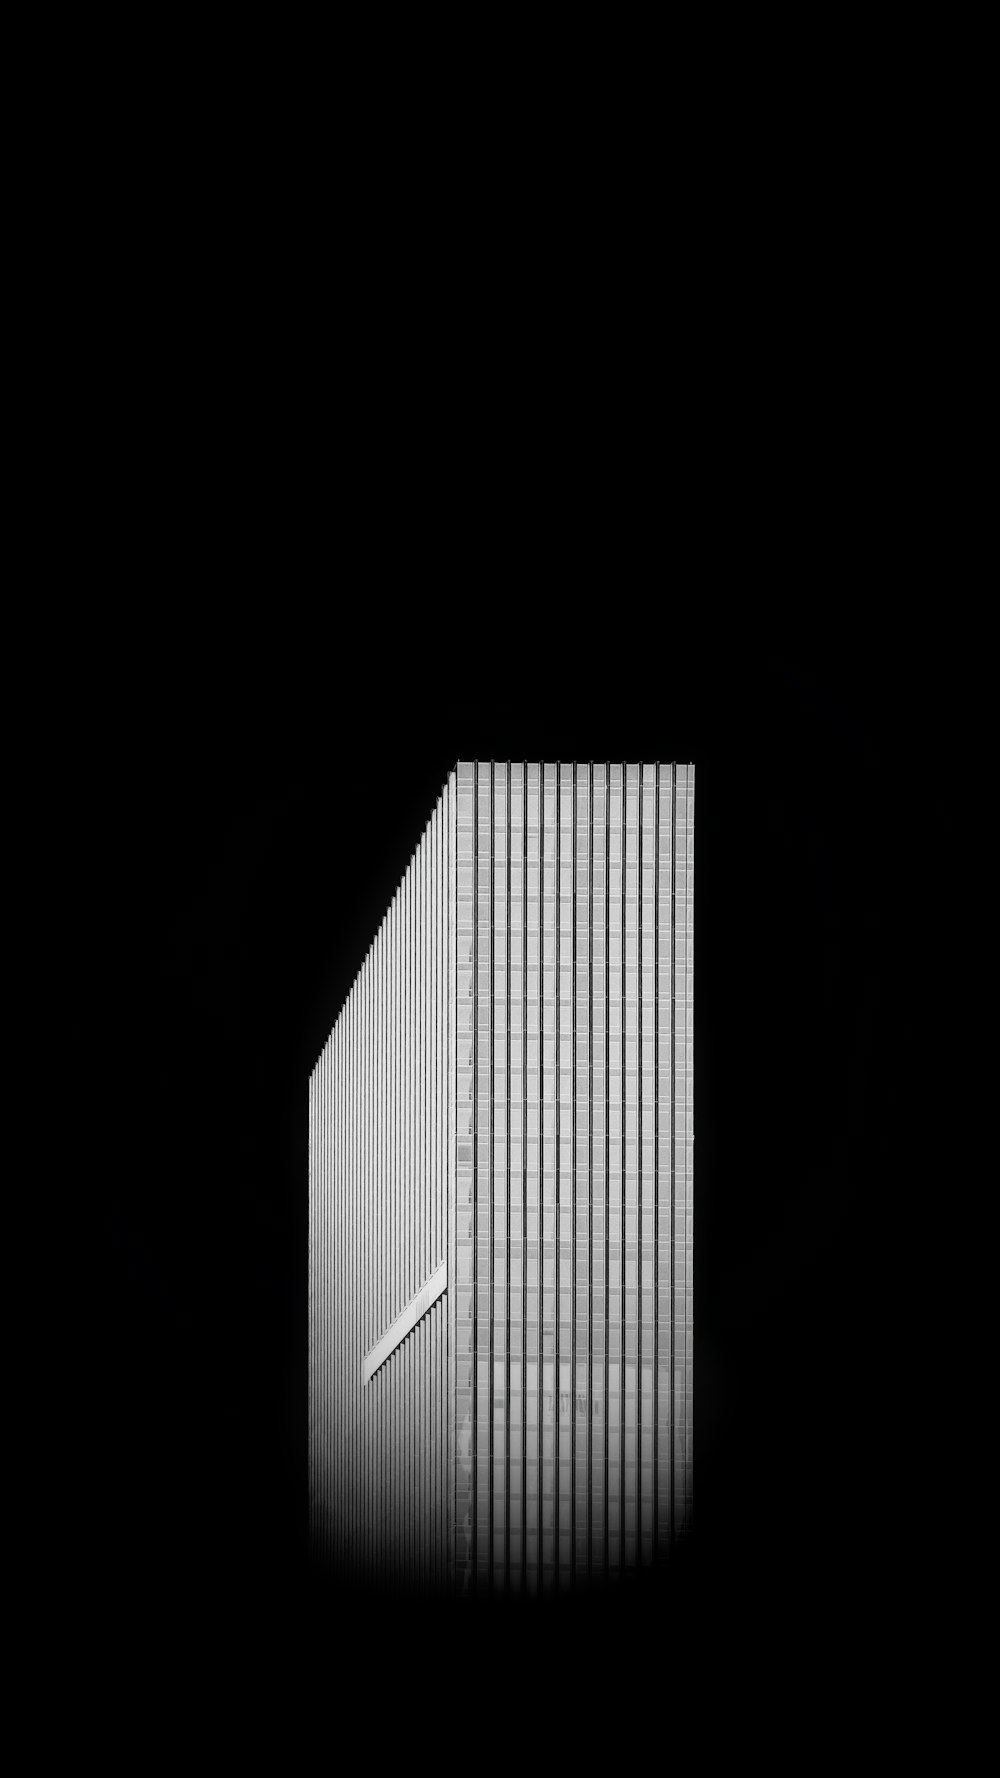 immeuble de grande hauteur noir et blanc